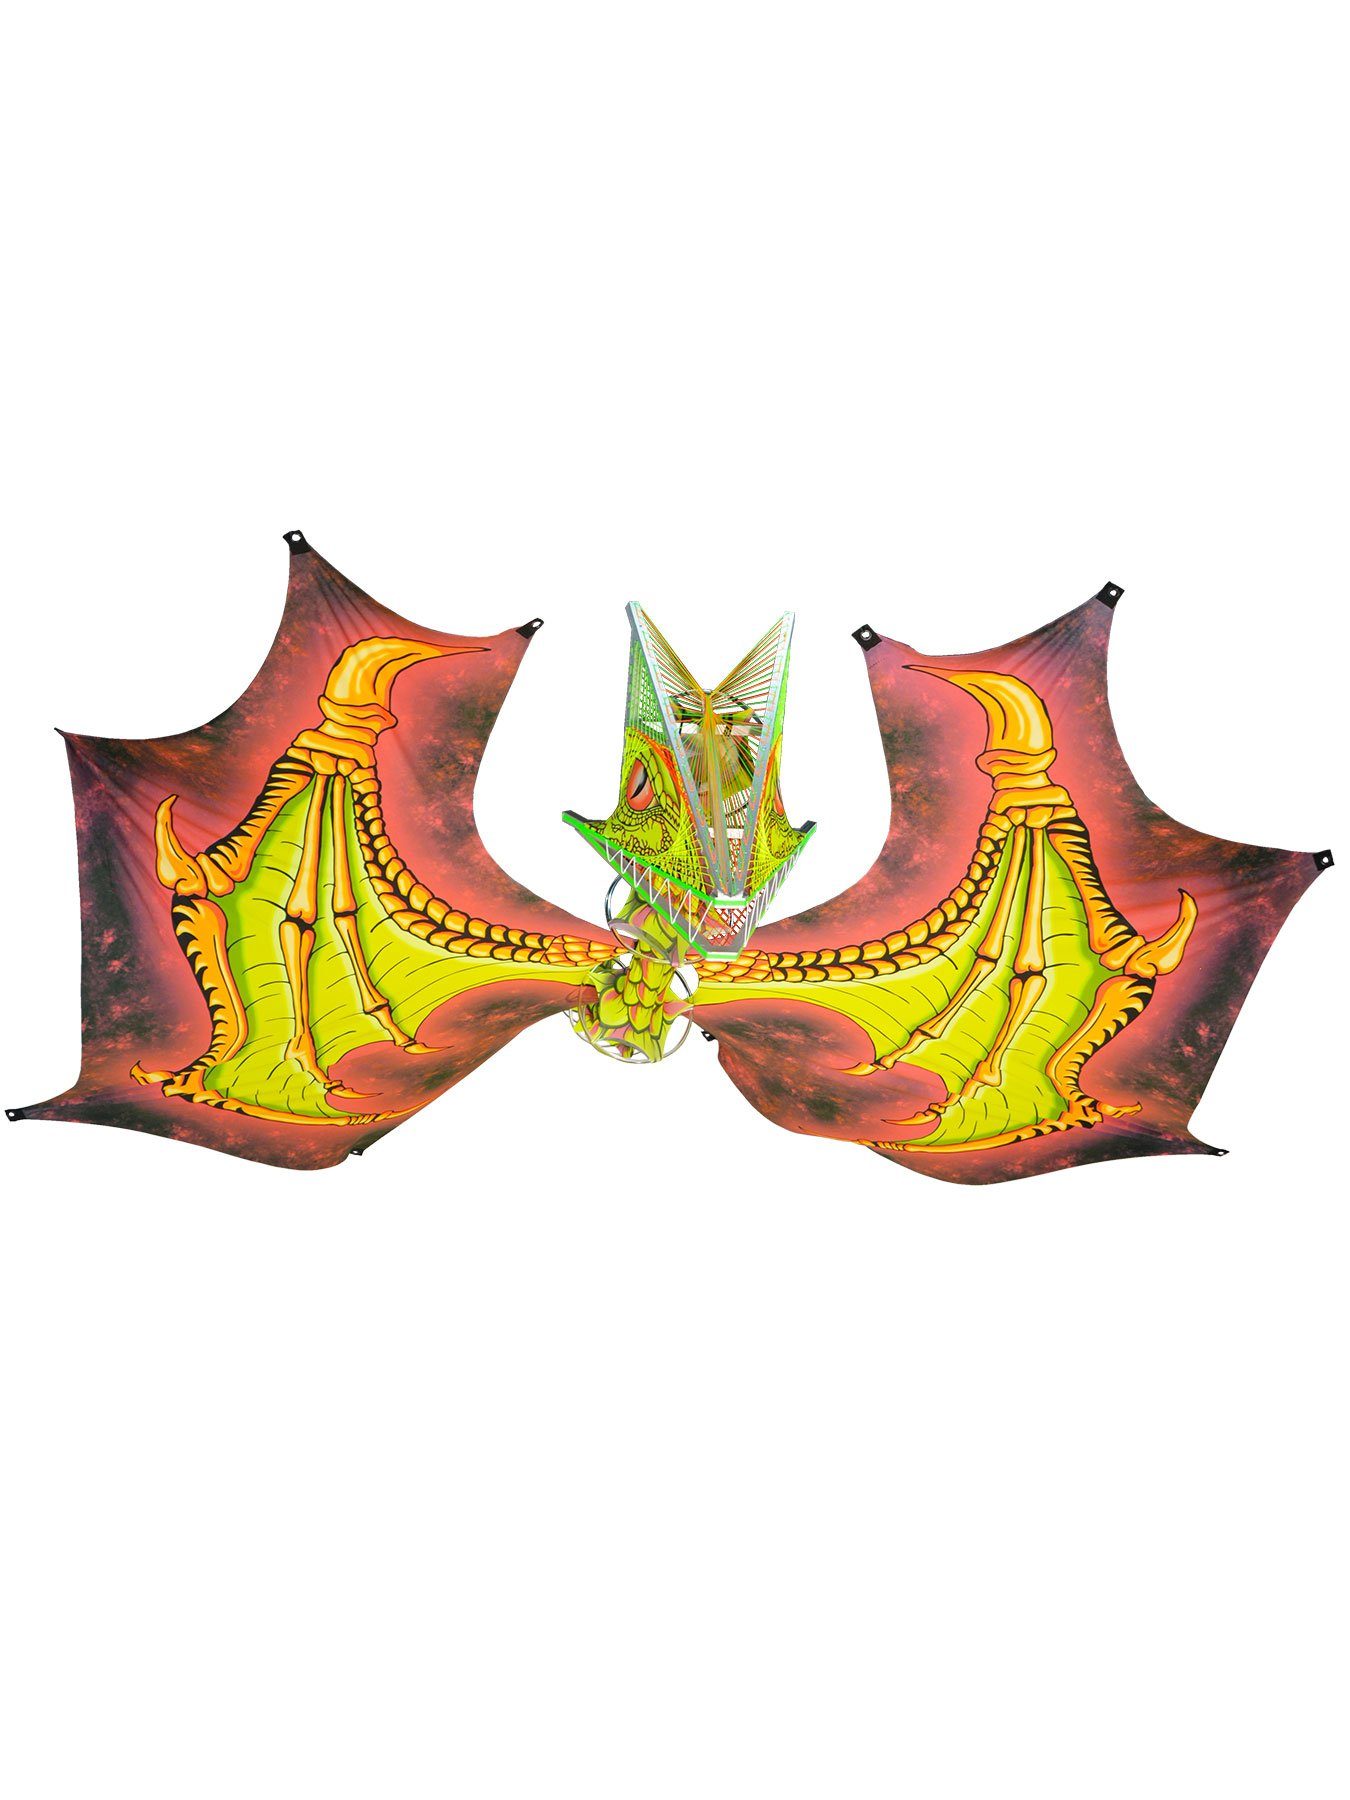 PSYWORK Dekoobjekt Schwarzlicht StringArt Drache Spandex Flügel "Dragon Temple Green" 6m, UV-aktiv, leuchtet unter Schwarzlicht